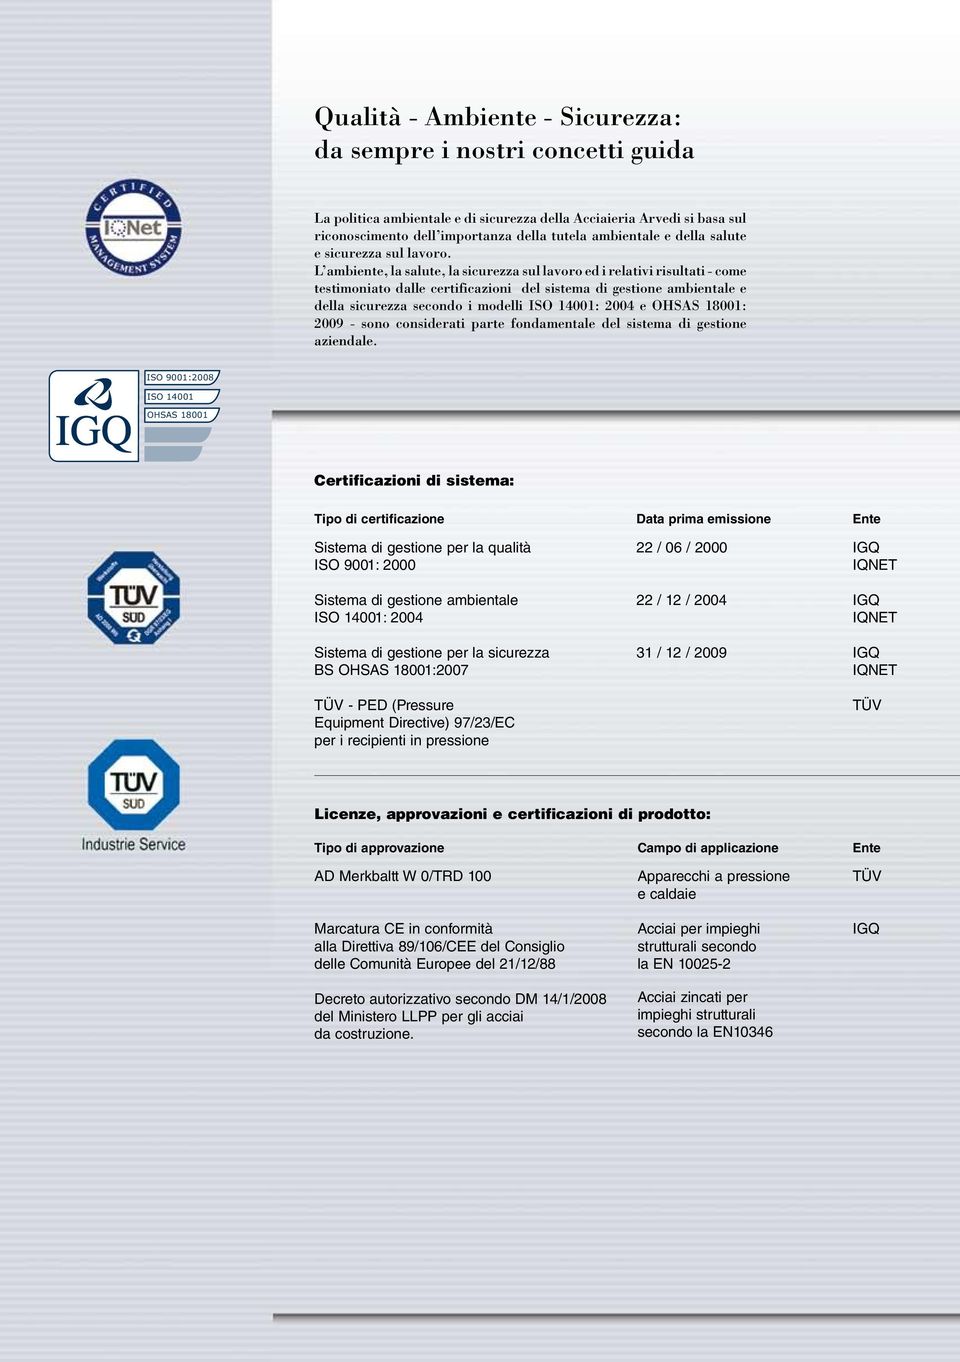 L ambiente, la salute, la sicurezza sul lavoro ed i relativi risultati - come testimoniato dalle certificazioni del sistema di gestione ambientale e della sicurezza secondo i modelli ISO 14001: 2004